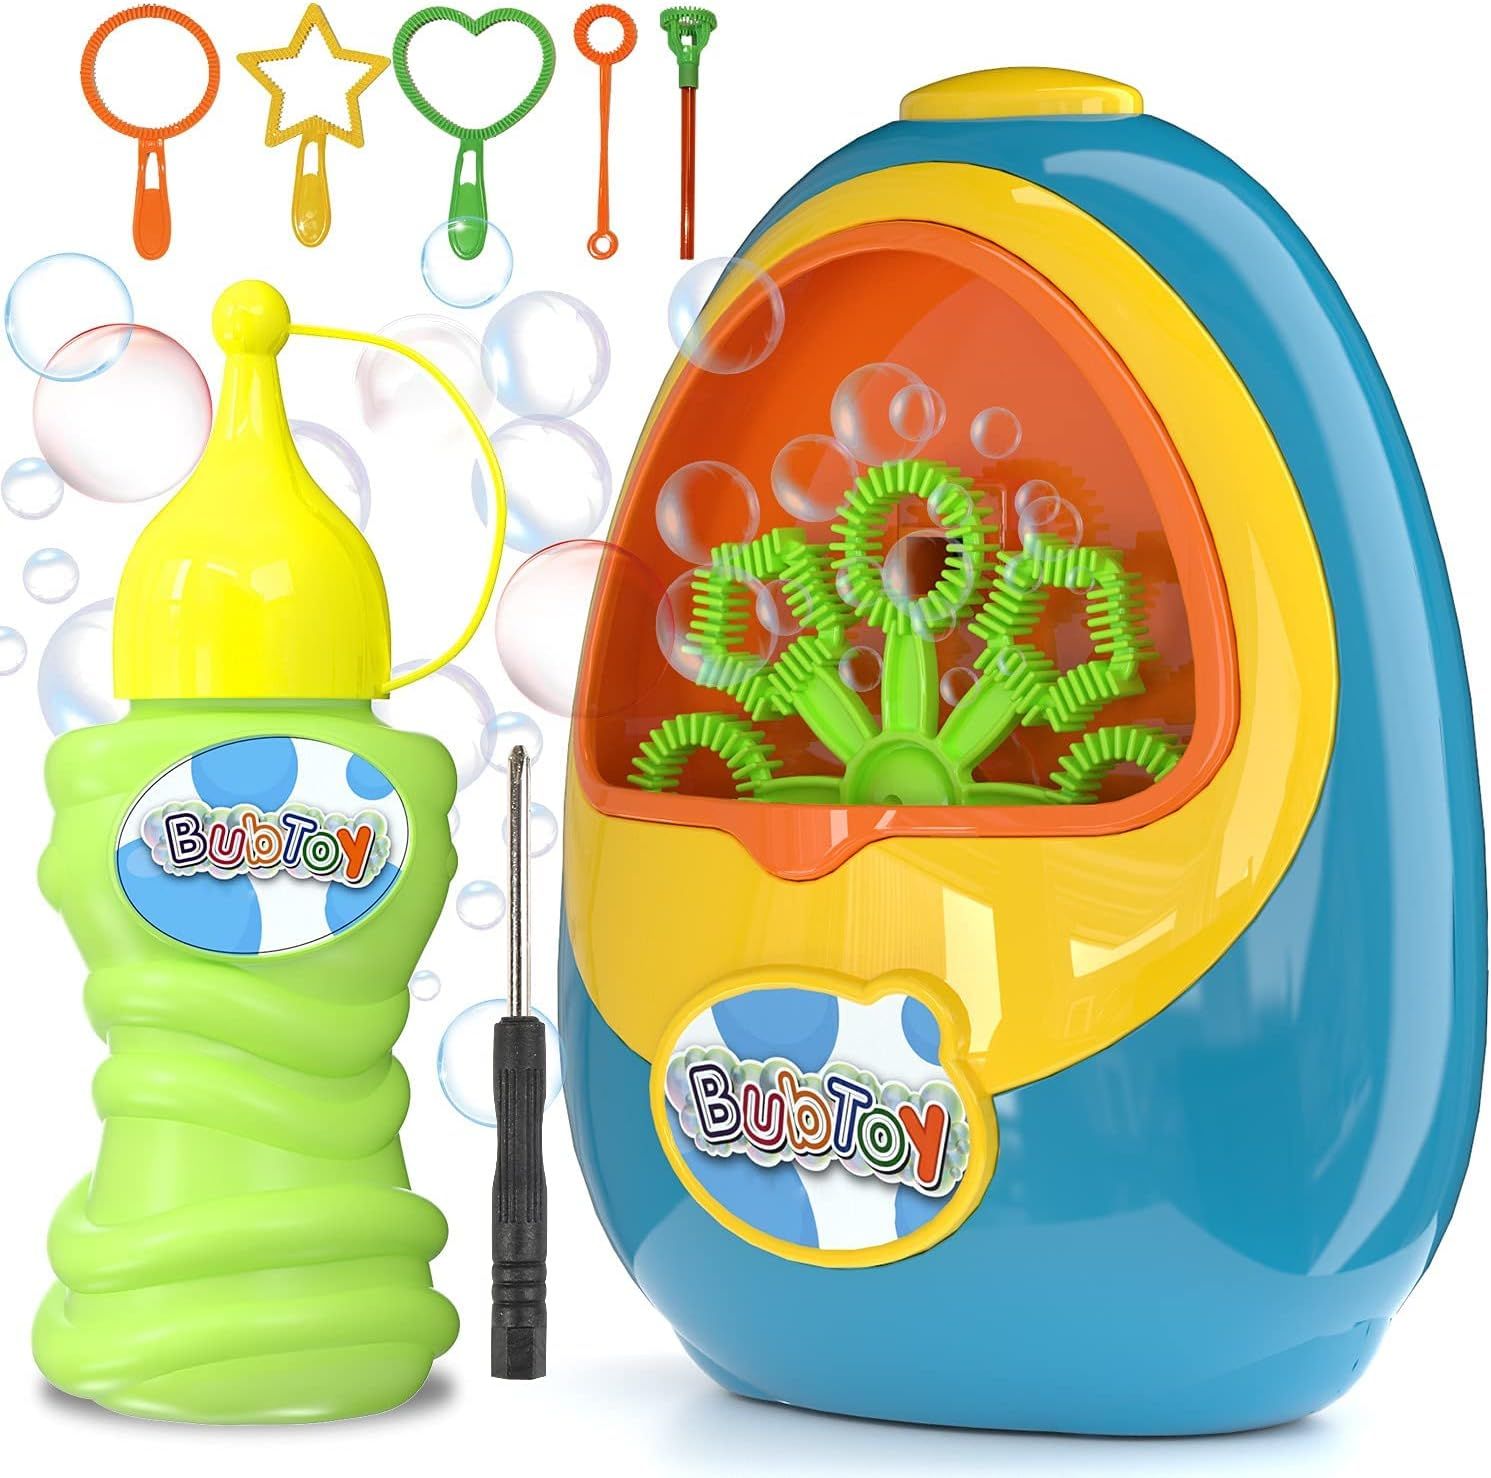 BubToy Bubble Machine for Kids - Automatic Bubble Blower 5000+ Bubbles Per Minute, High Output Bu... | Amazon (US)